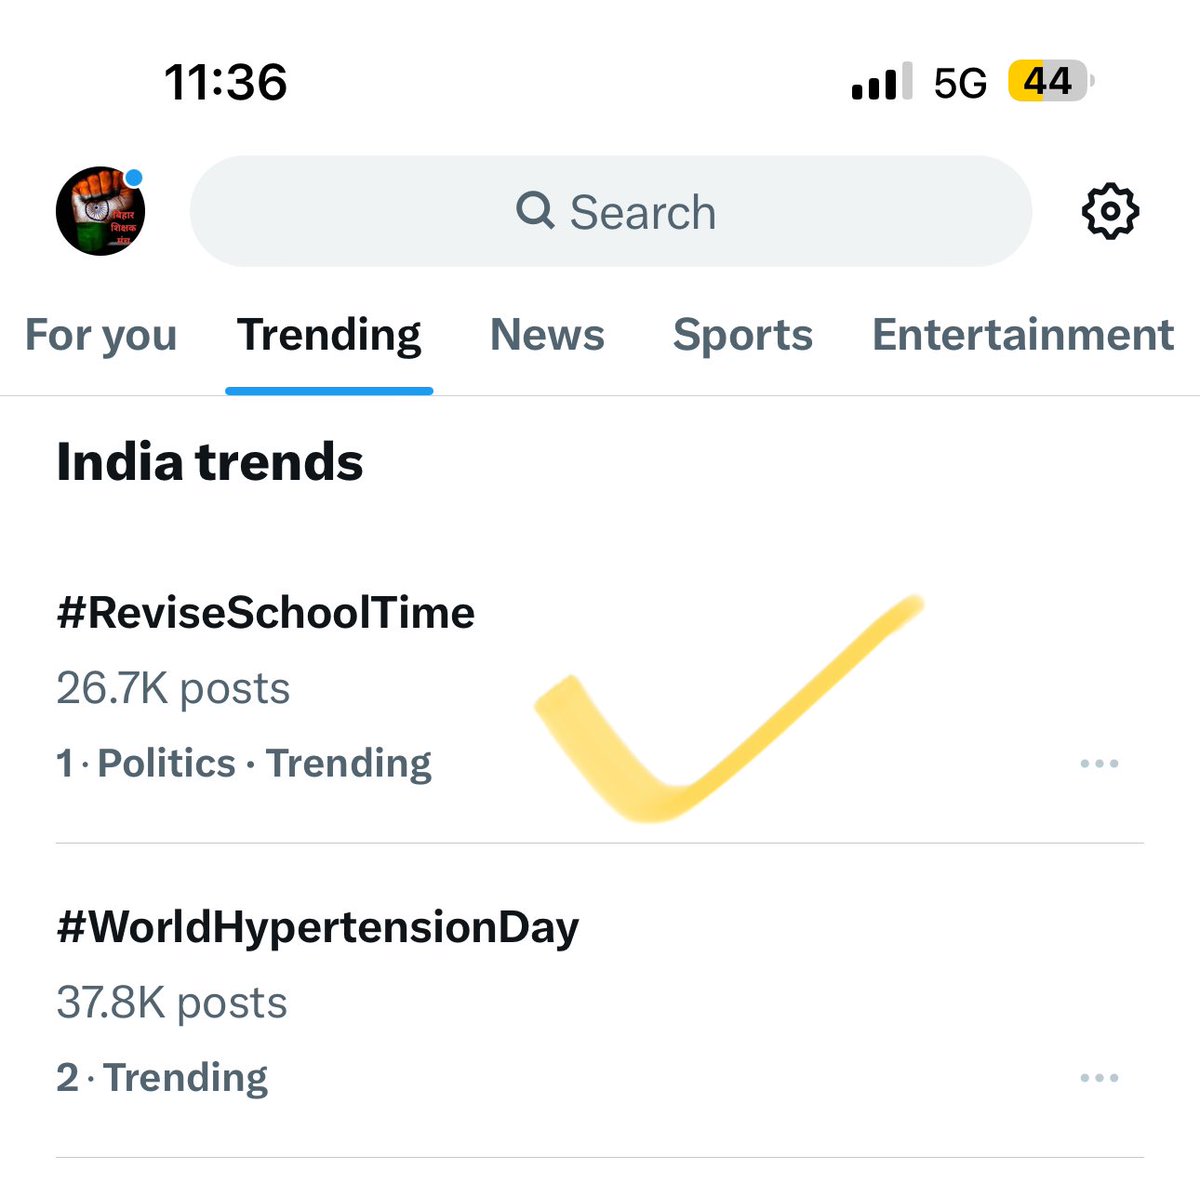 मीडिया संस्थान और पत्रकार बंधुओं से आग्रह है कि बिहार के स्कूल संचालन के समय को बदलाव को लेकर #ReviseSchoolTime भारत में नंबर एक पे ट्रेंड कर रहा है । इसीसे इस मुद्दे की अहमियत का पता चलता है । इस खबर को निश्चित रूप से जगह दें। @RajnishJhakumar @ArunkrHt @Live_Cities